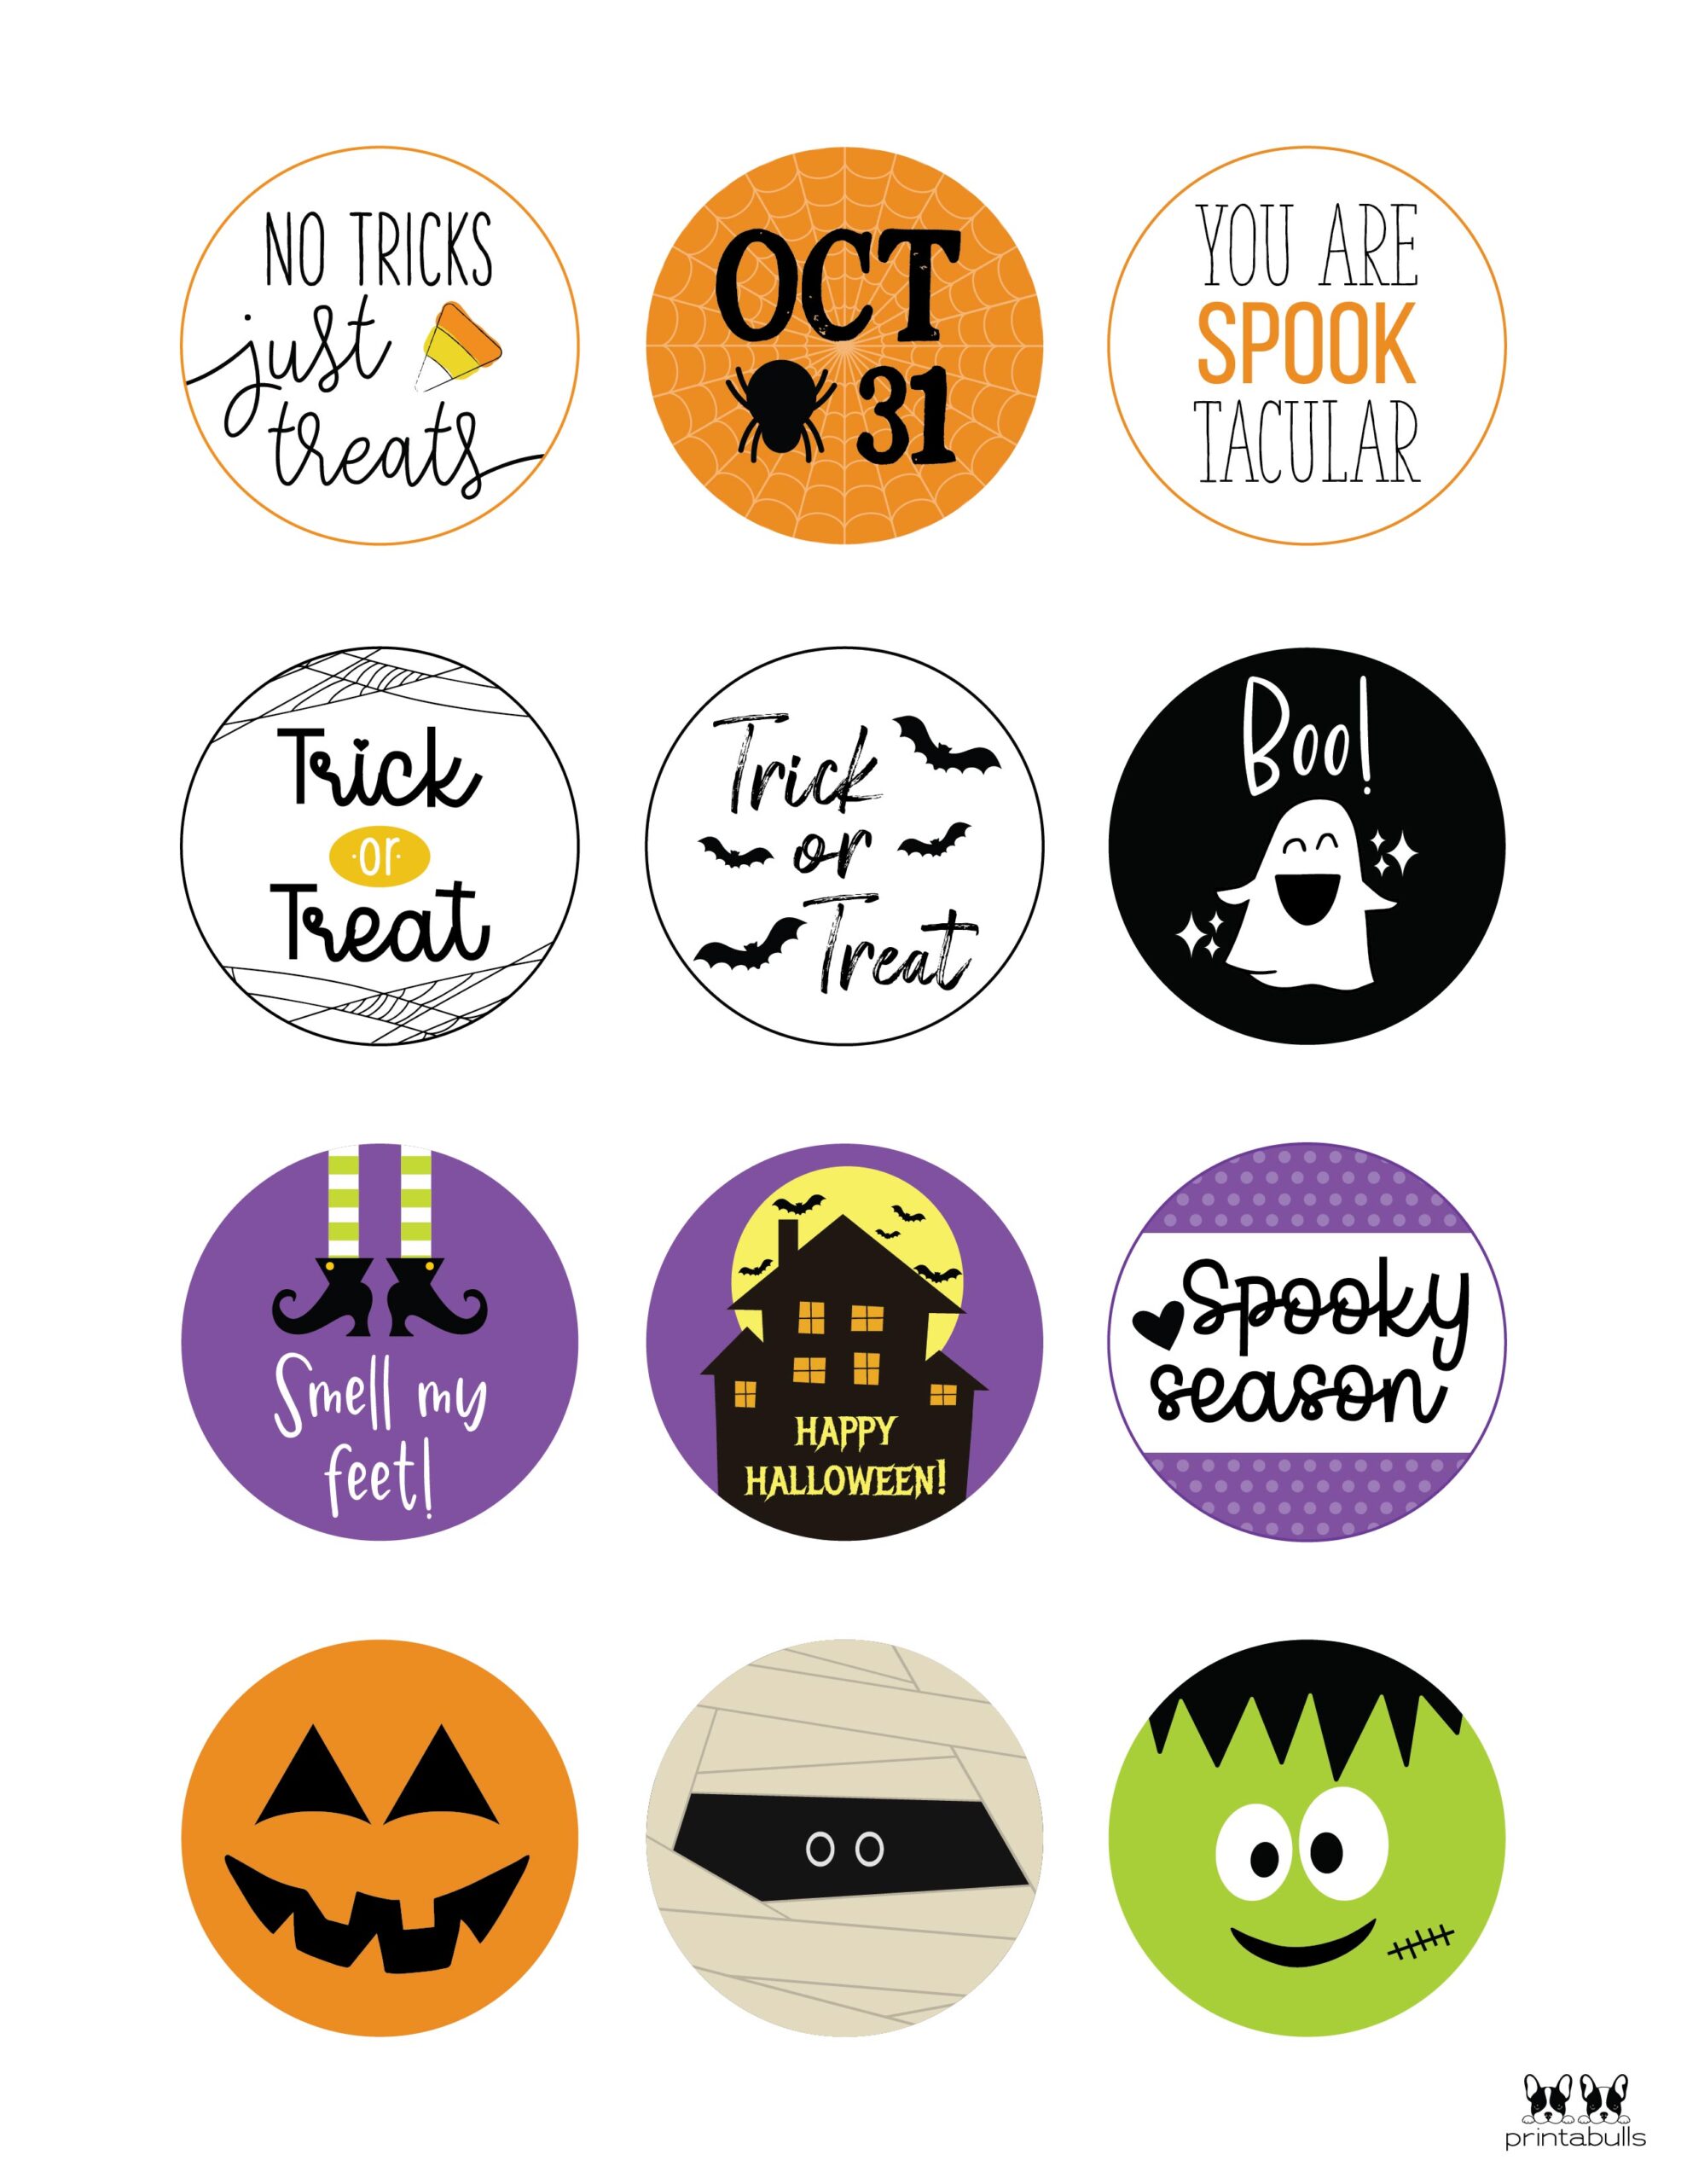 Printable Halloween Tags from Printabulls